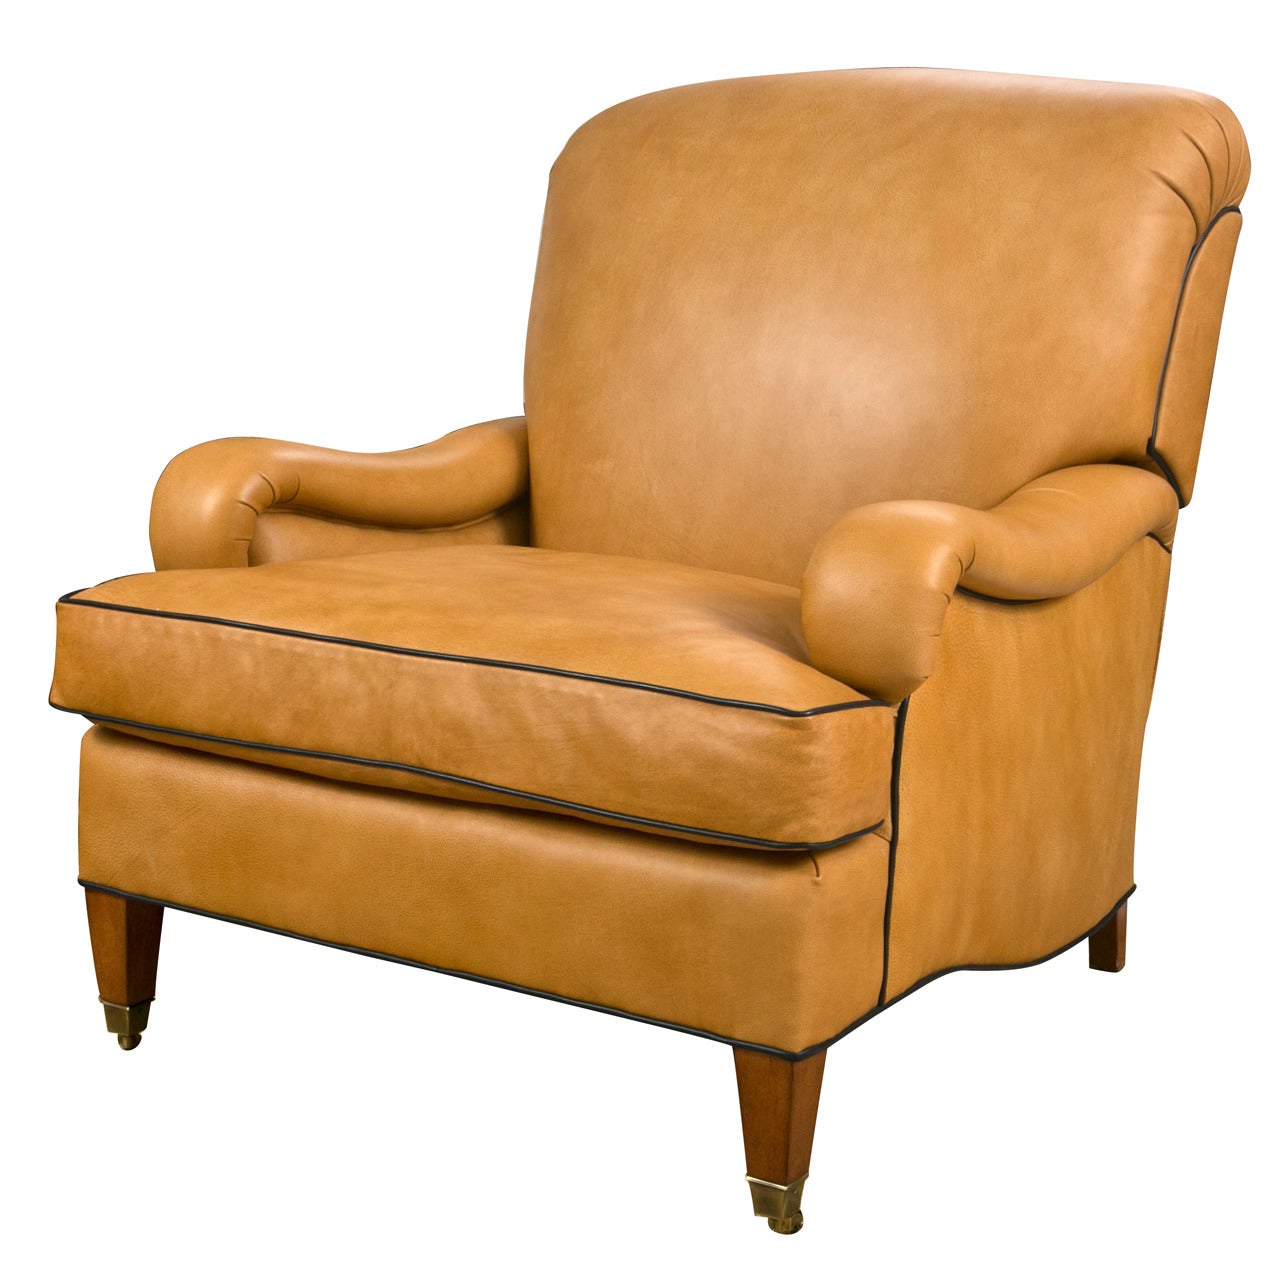 Leather Club Chair by Edward Ferrell